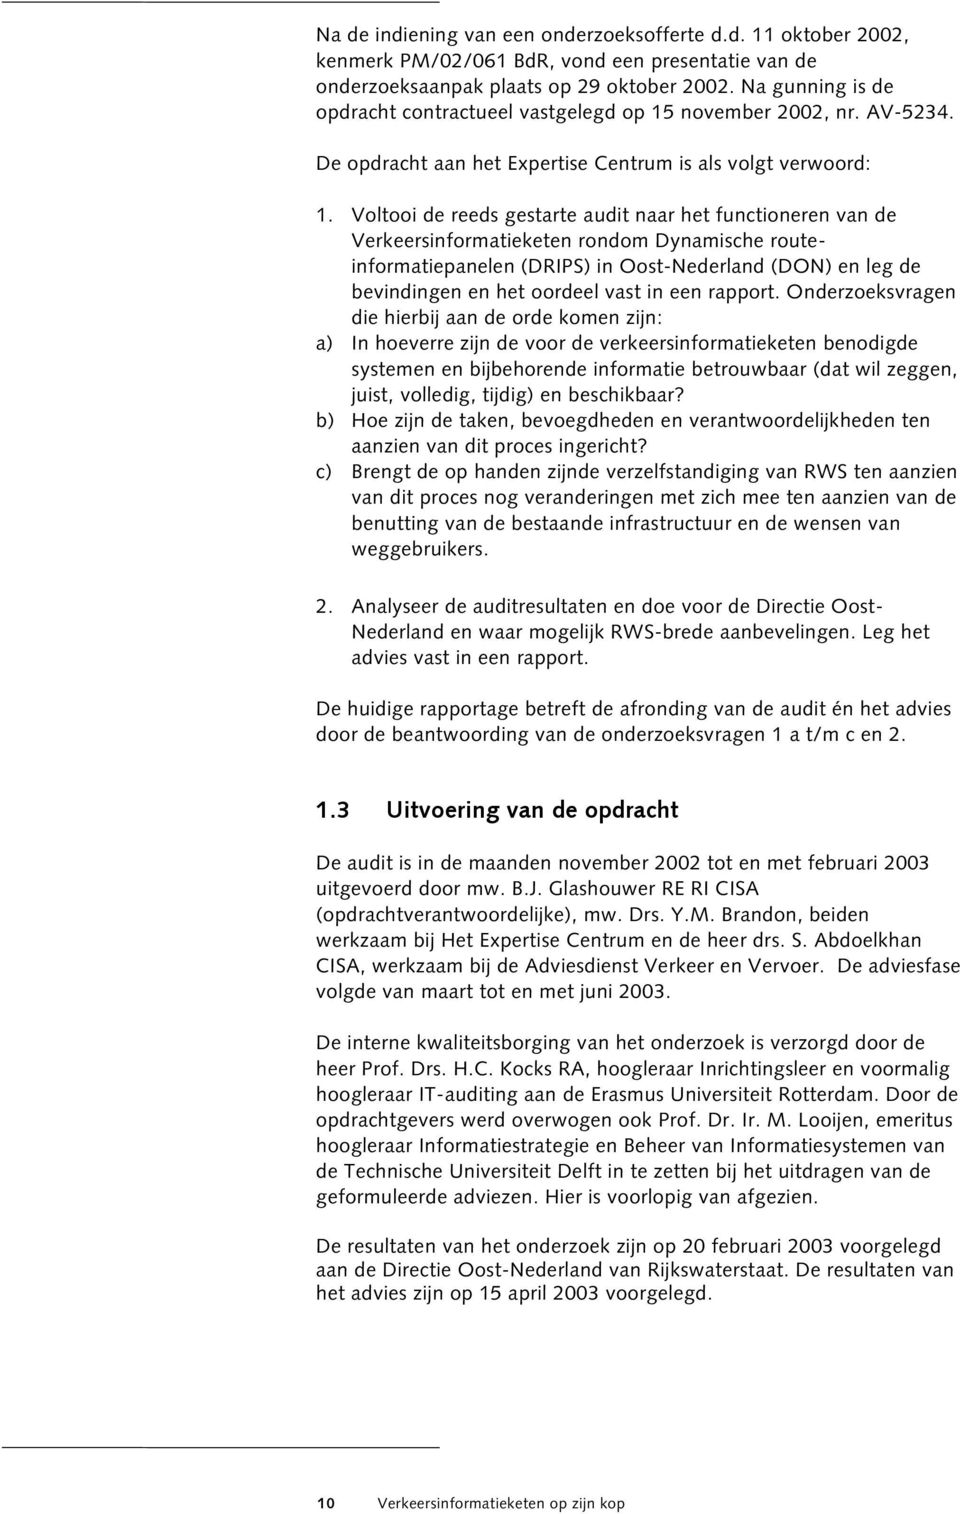 Voltooi de reeds gestarte audit naar het functioneren van de Verkeersinformatieketen rondom Dynamische routeinformatiepanelen (DRIPS) in Oost-Nederland (DON) en leg de bevindingen en het oordeel vast